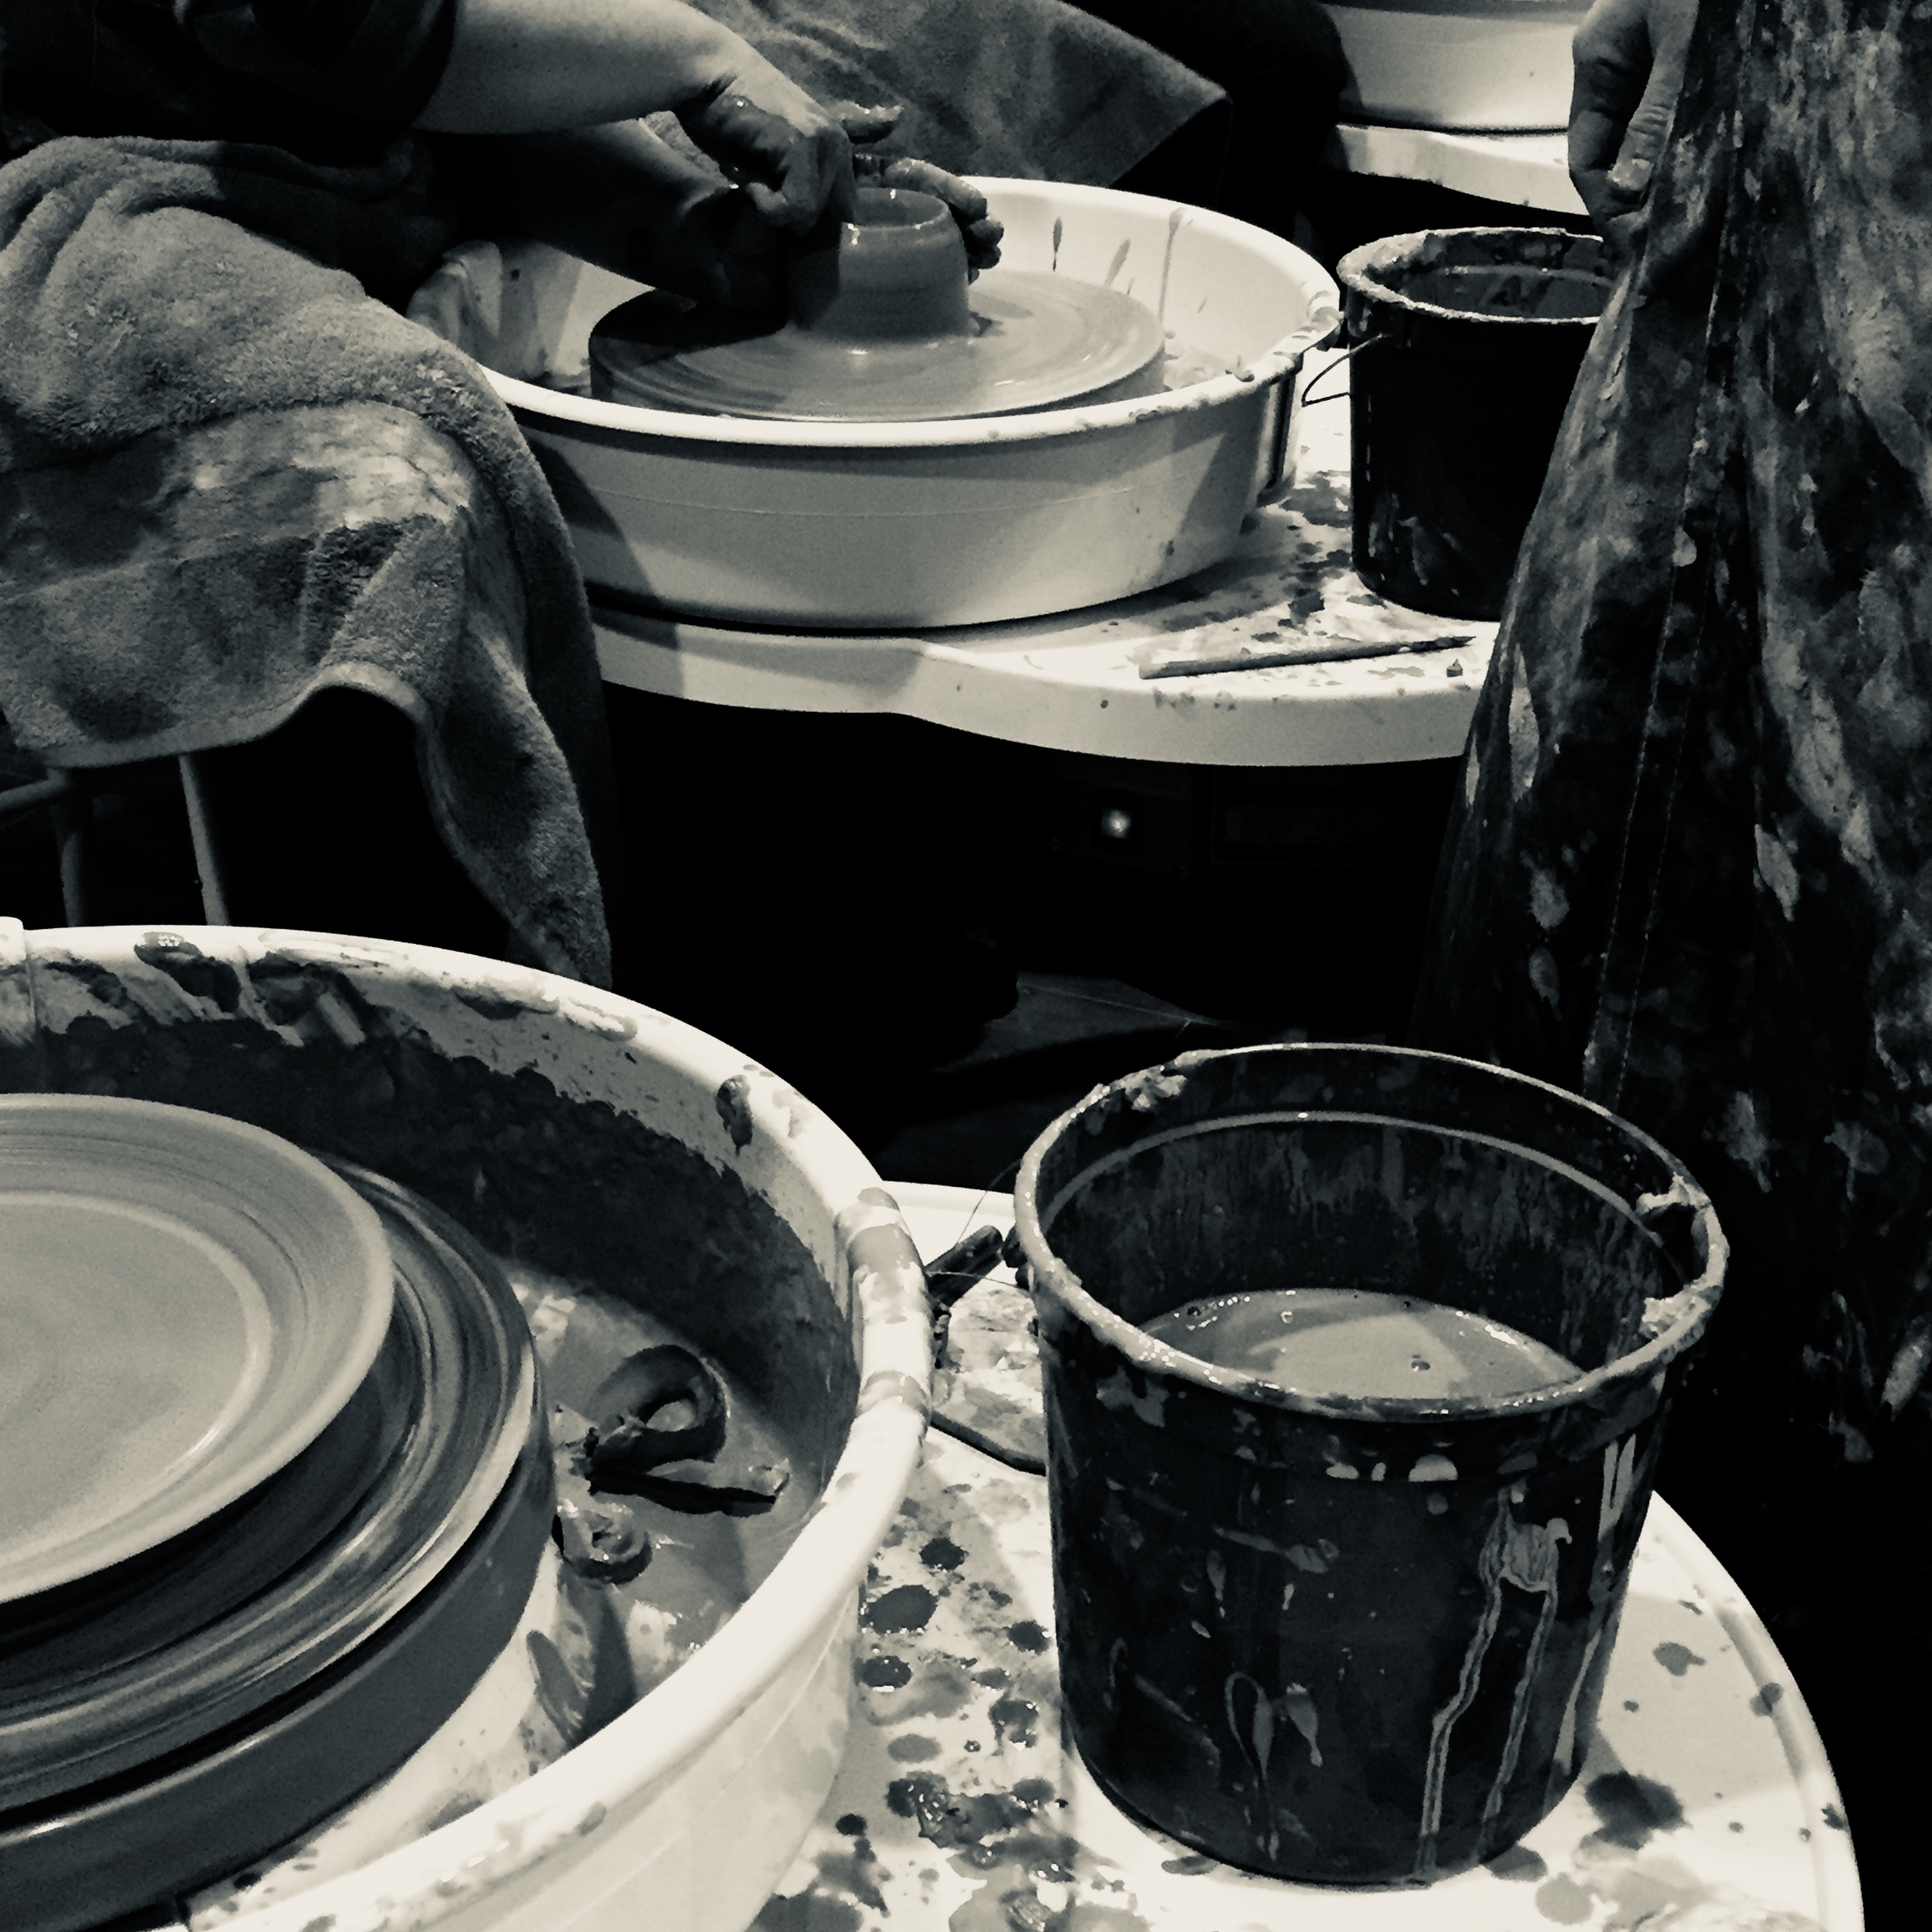 DIY Workshops — Hands on Pottery